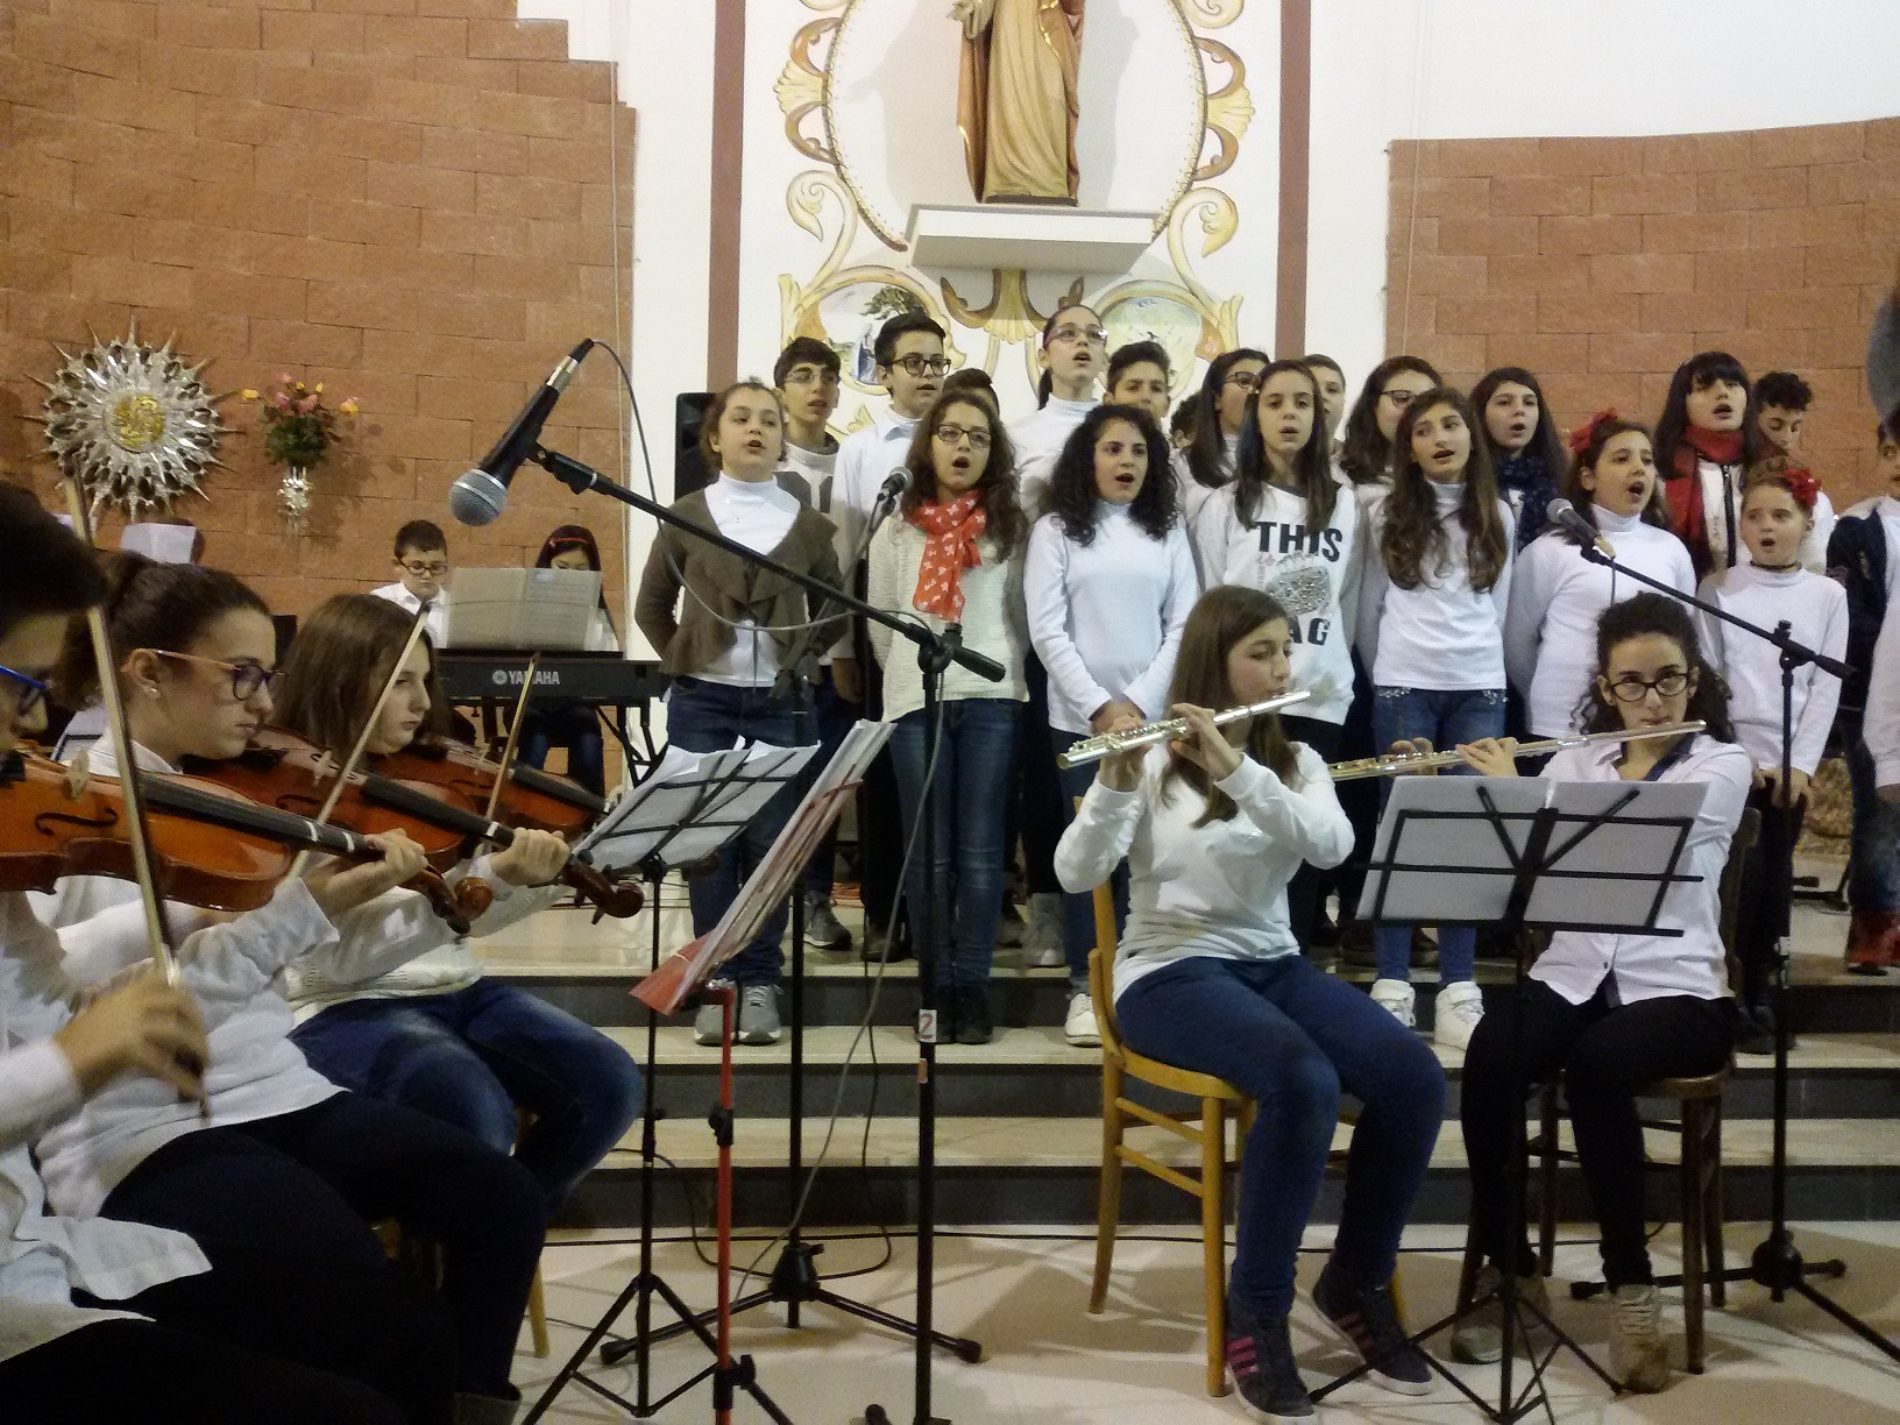 Concerto di Natale da parte degli alunni del “San Giovanni Bosco” per cancellare l’indifferenza, la cattiveria e donare un’atmosfera di pace, risate e allegria